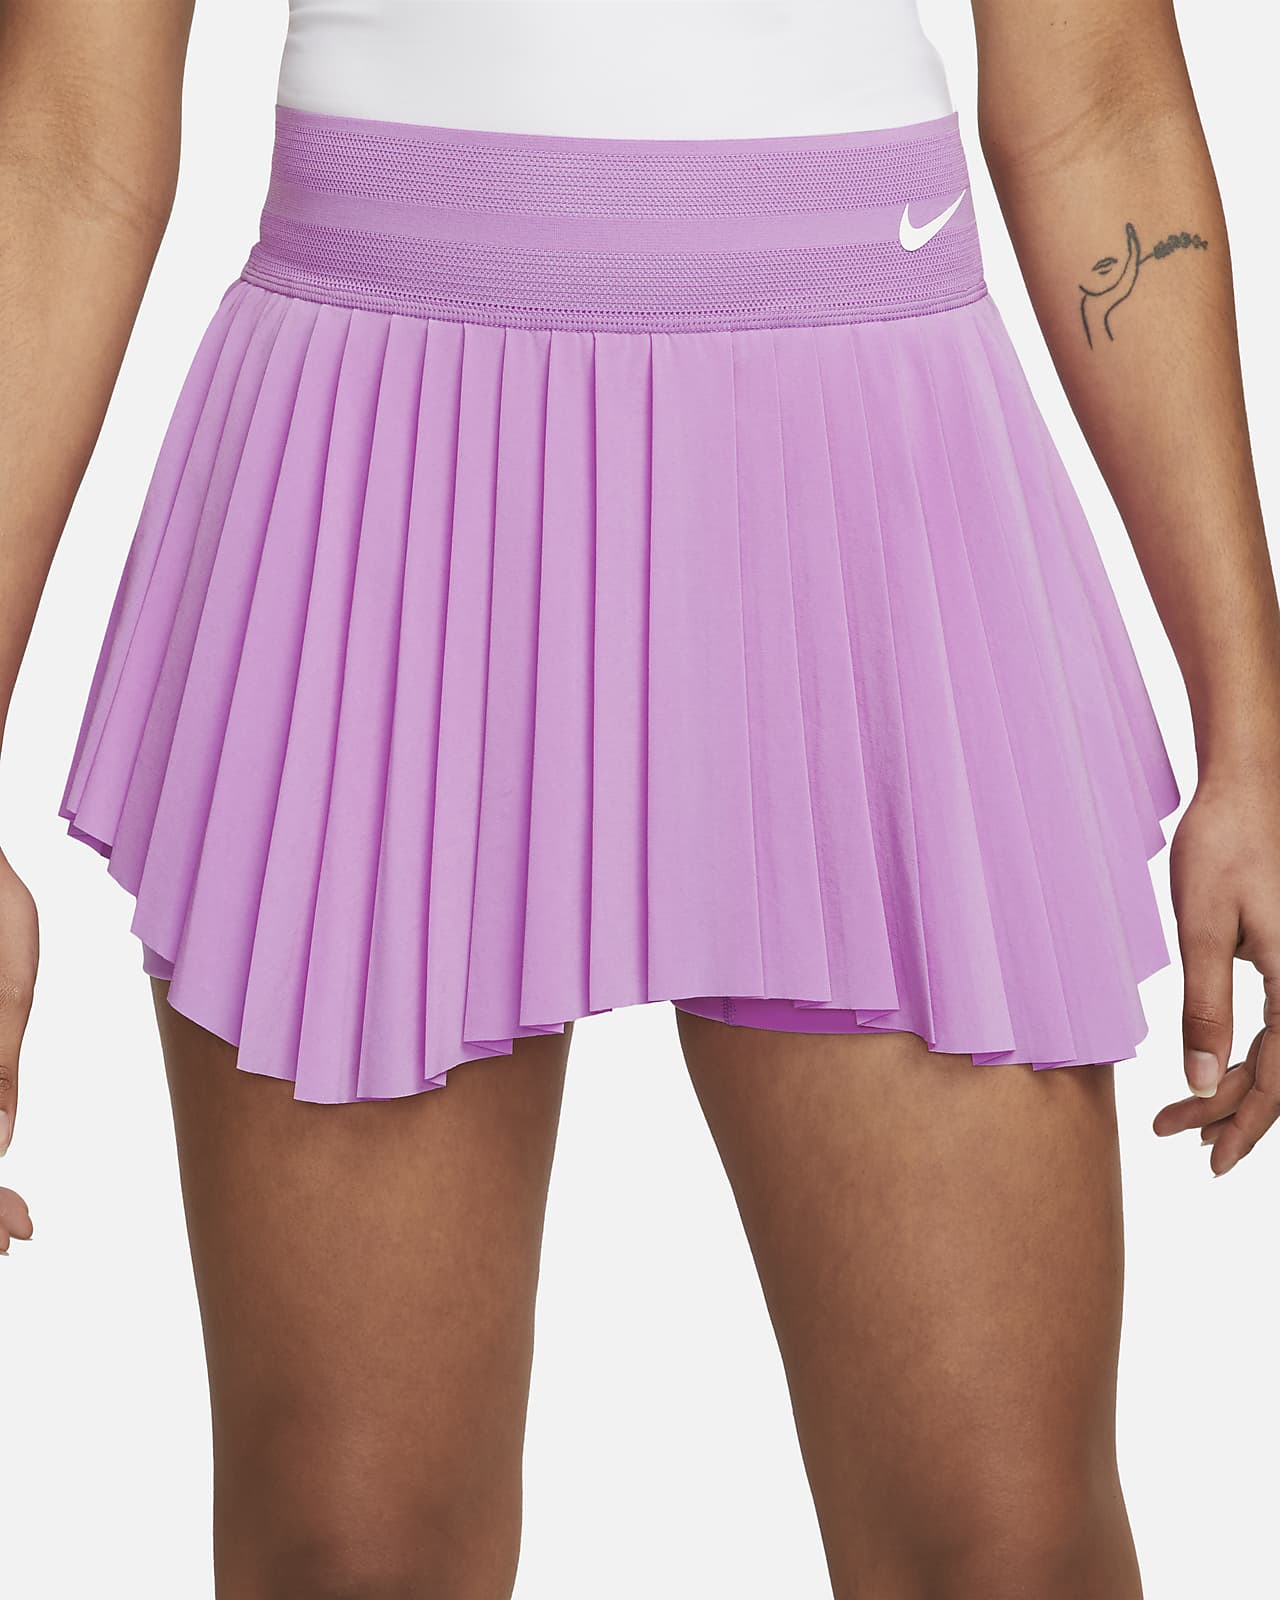 Land van staatsburgerschap Fietstaxi shampoo NikeCourt Dri-FIT Slam Women's Tennis Skirt. Nike.com